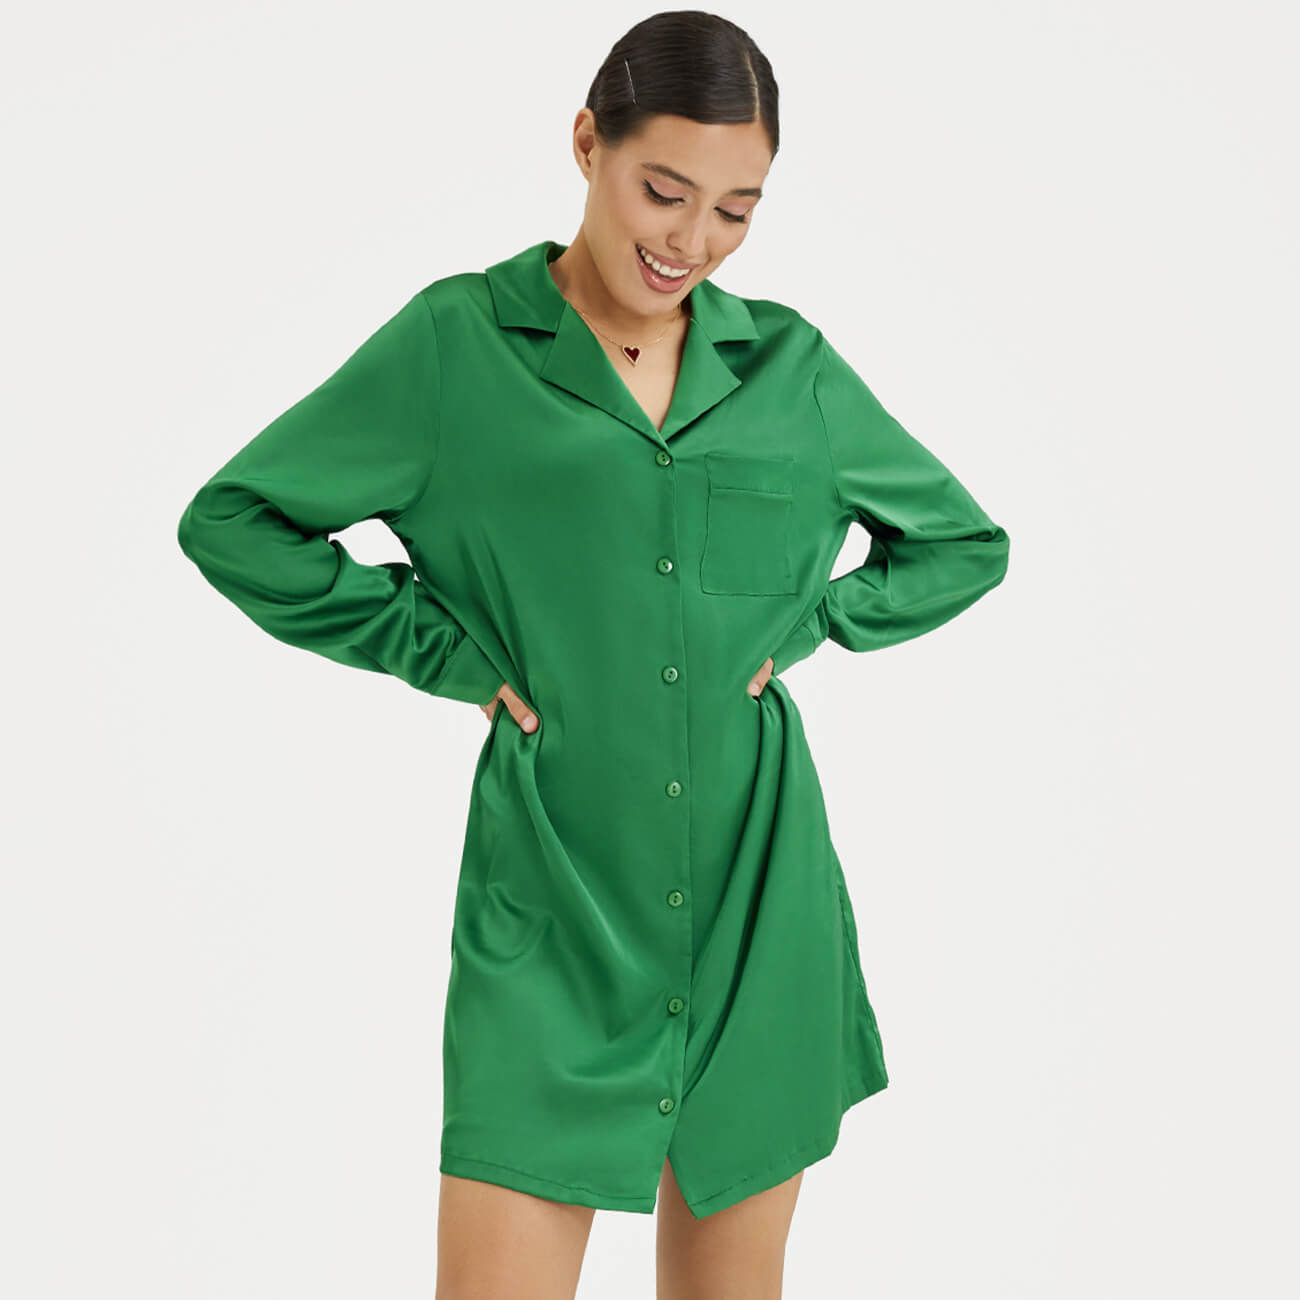 Рубашка женская, р. XL, удлиненная, с длинным рукавом, полиэстер/эластан, зеленая, Madeline только женская толстовка с длинным рукавом стандартного кроя lounge